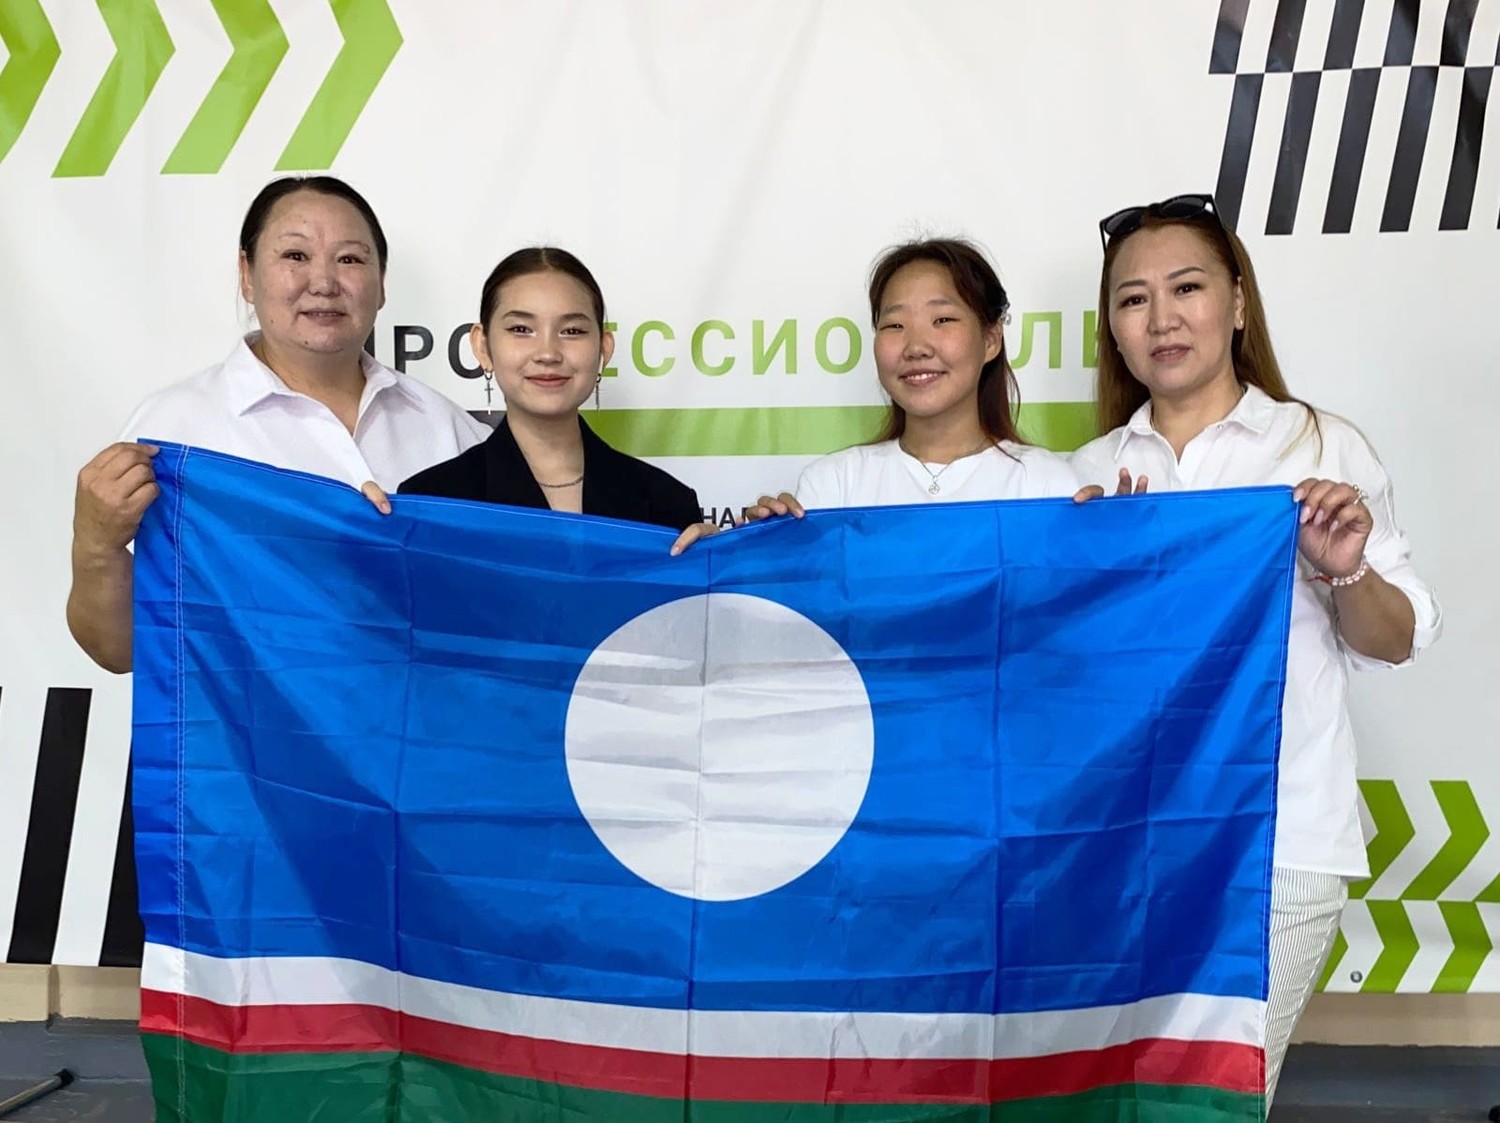 Пять медалей завоевали участники из Якутии на отборочном этапе чемпионата «Профессионалы»